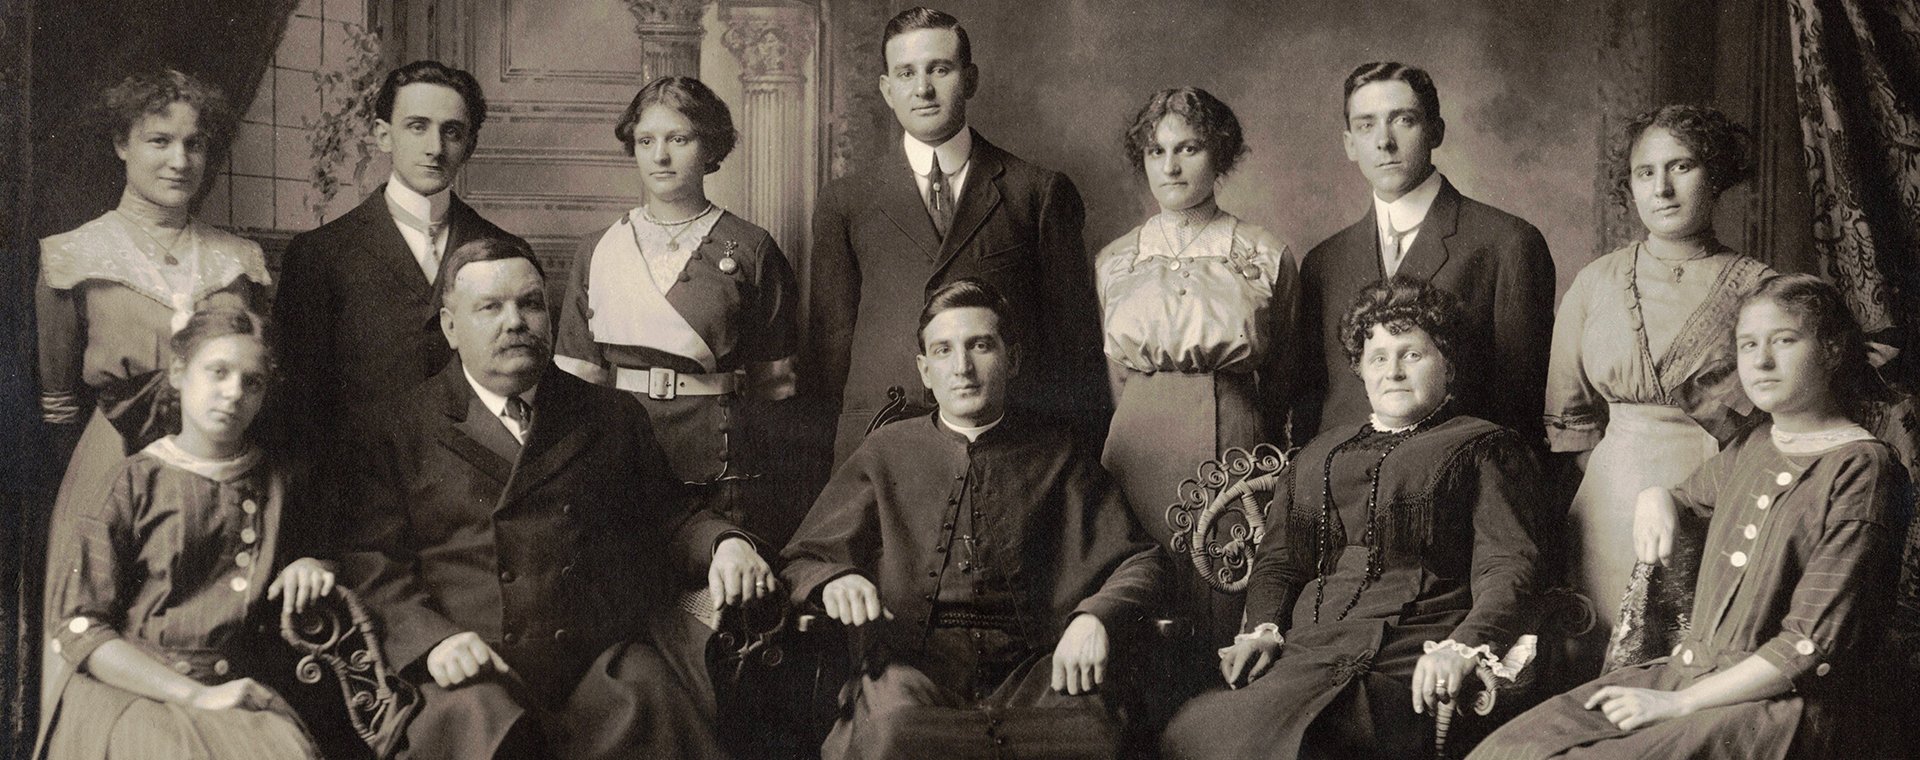 Photographie noir et blanc prise en studio. 12 personnes dans leurs beaux habits du début du 20e siècle. À l’avant sont assis Monseigneur Alfred LePailleur, ses parents et ses 2 plus jeunes sœurs. Debout à l’arrière, sont les autres membres de la fratrie.